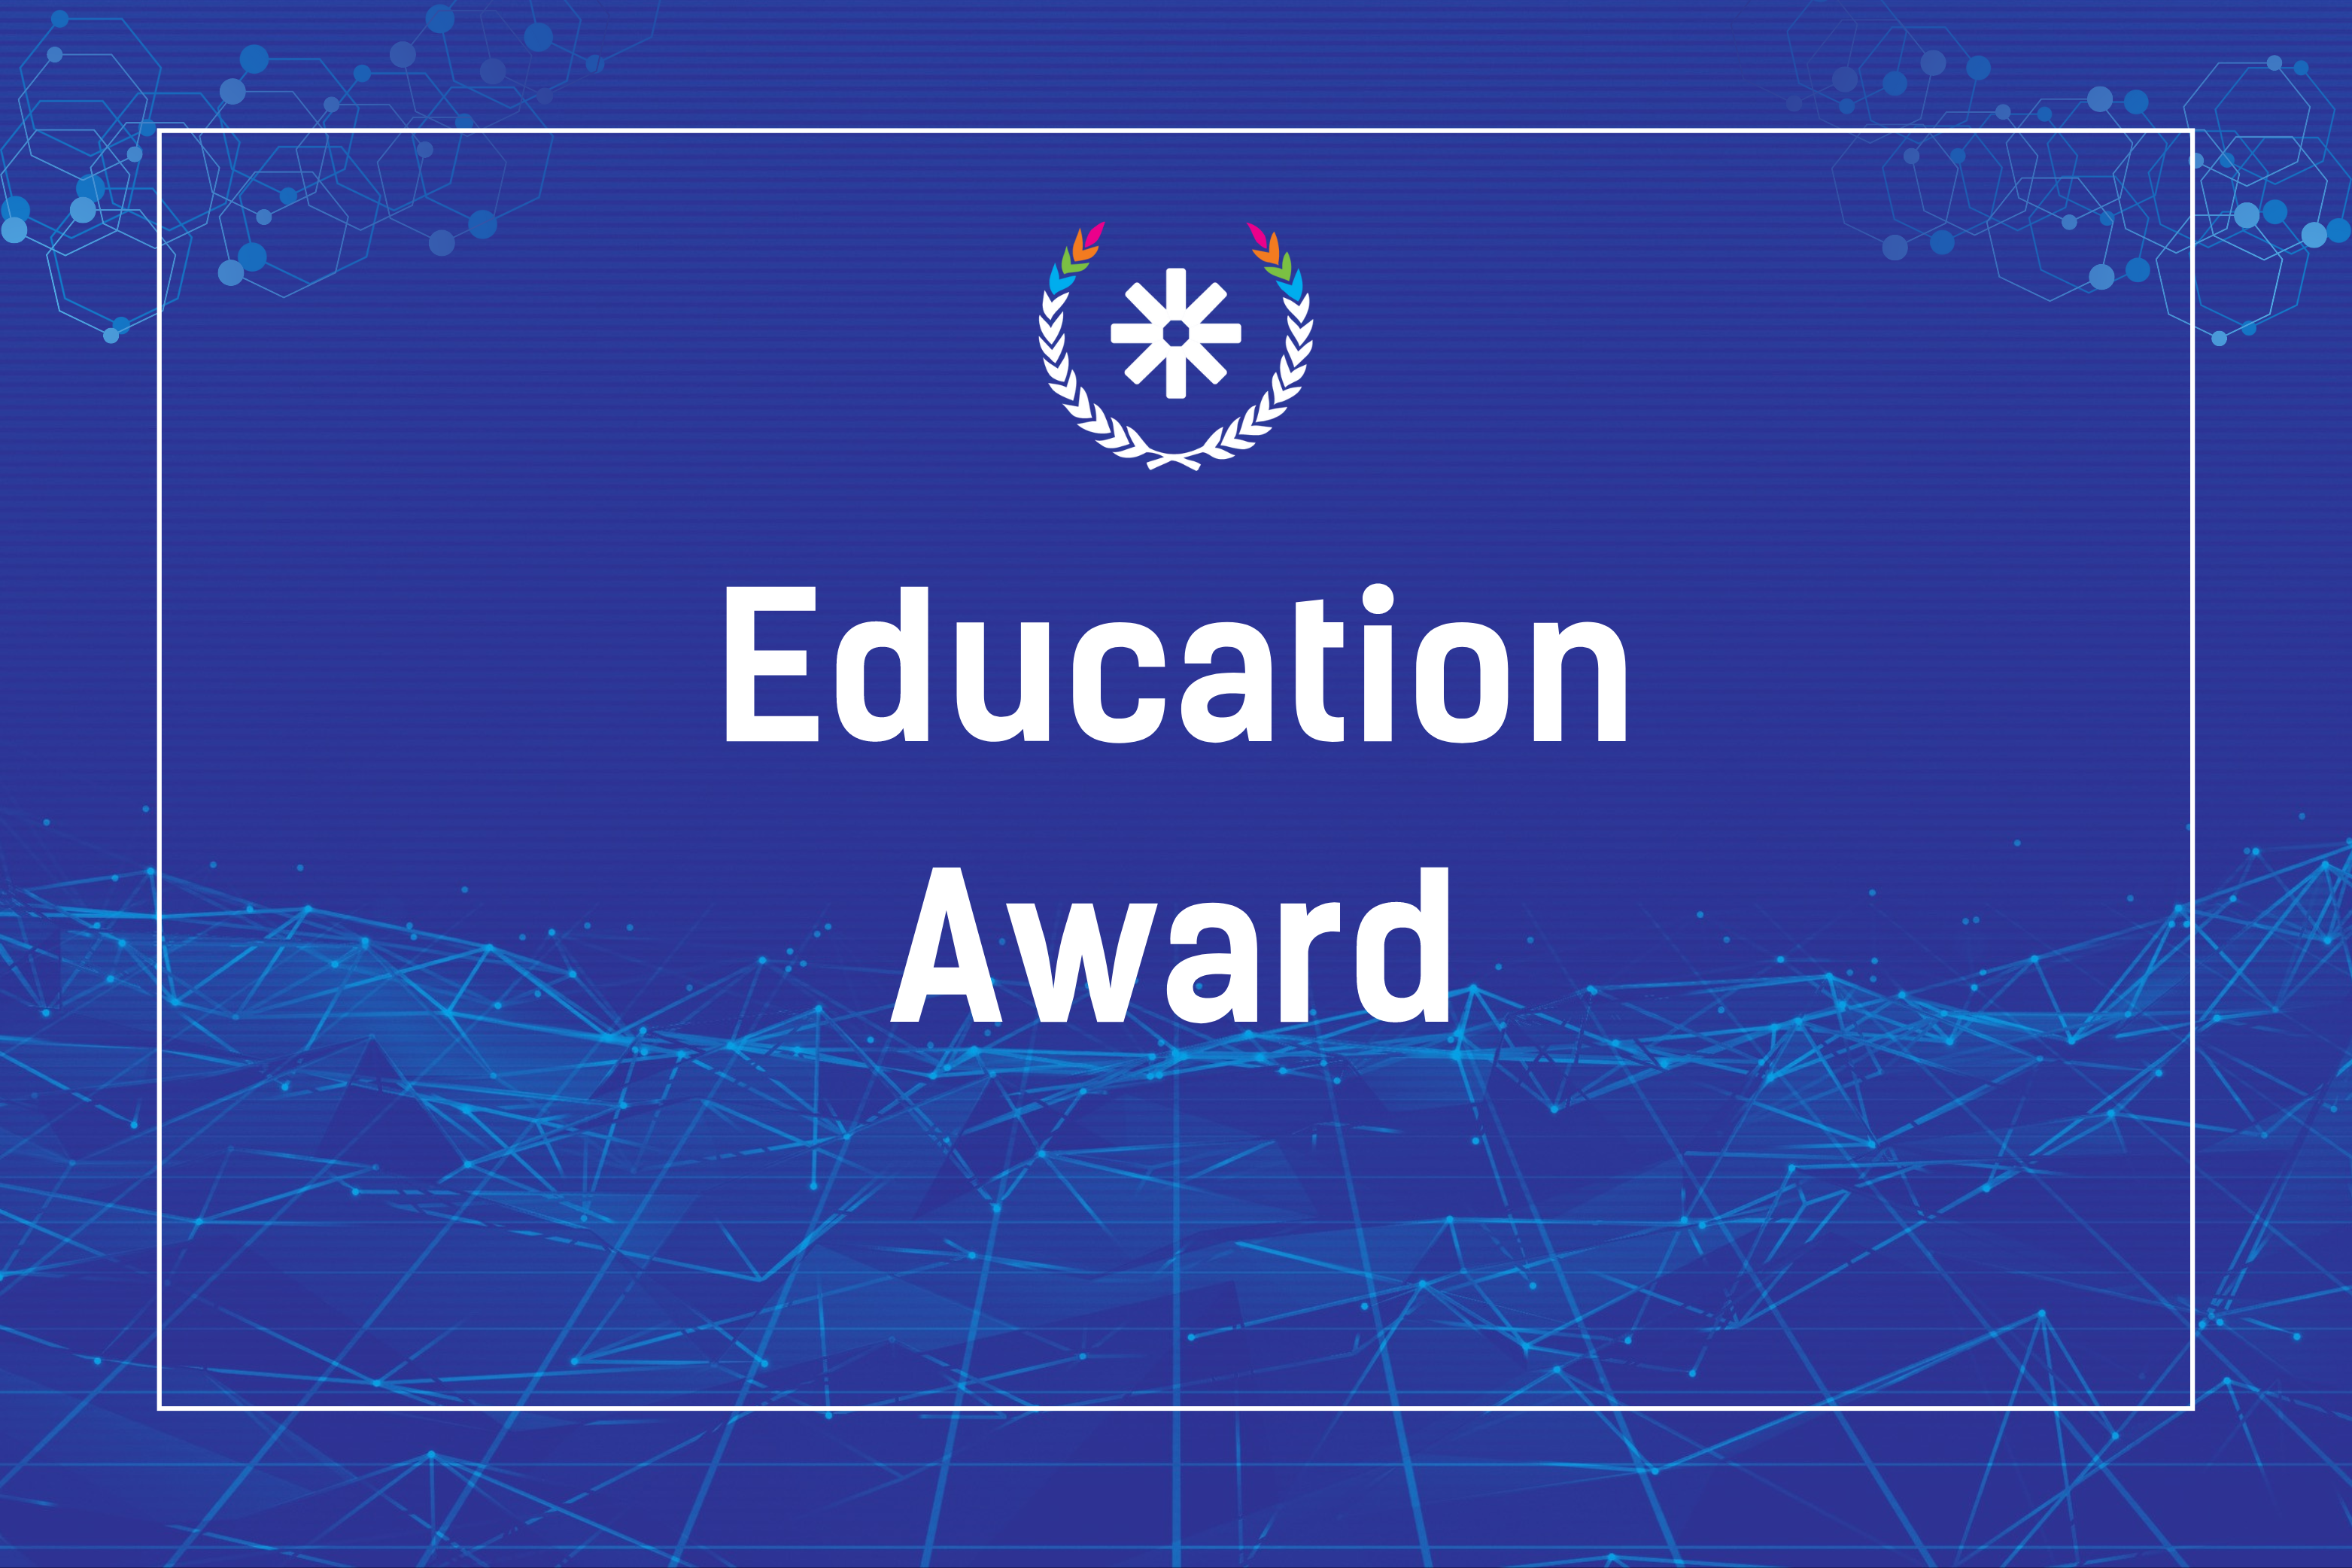 Education Award